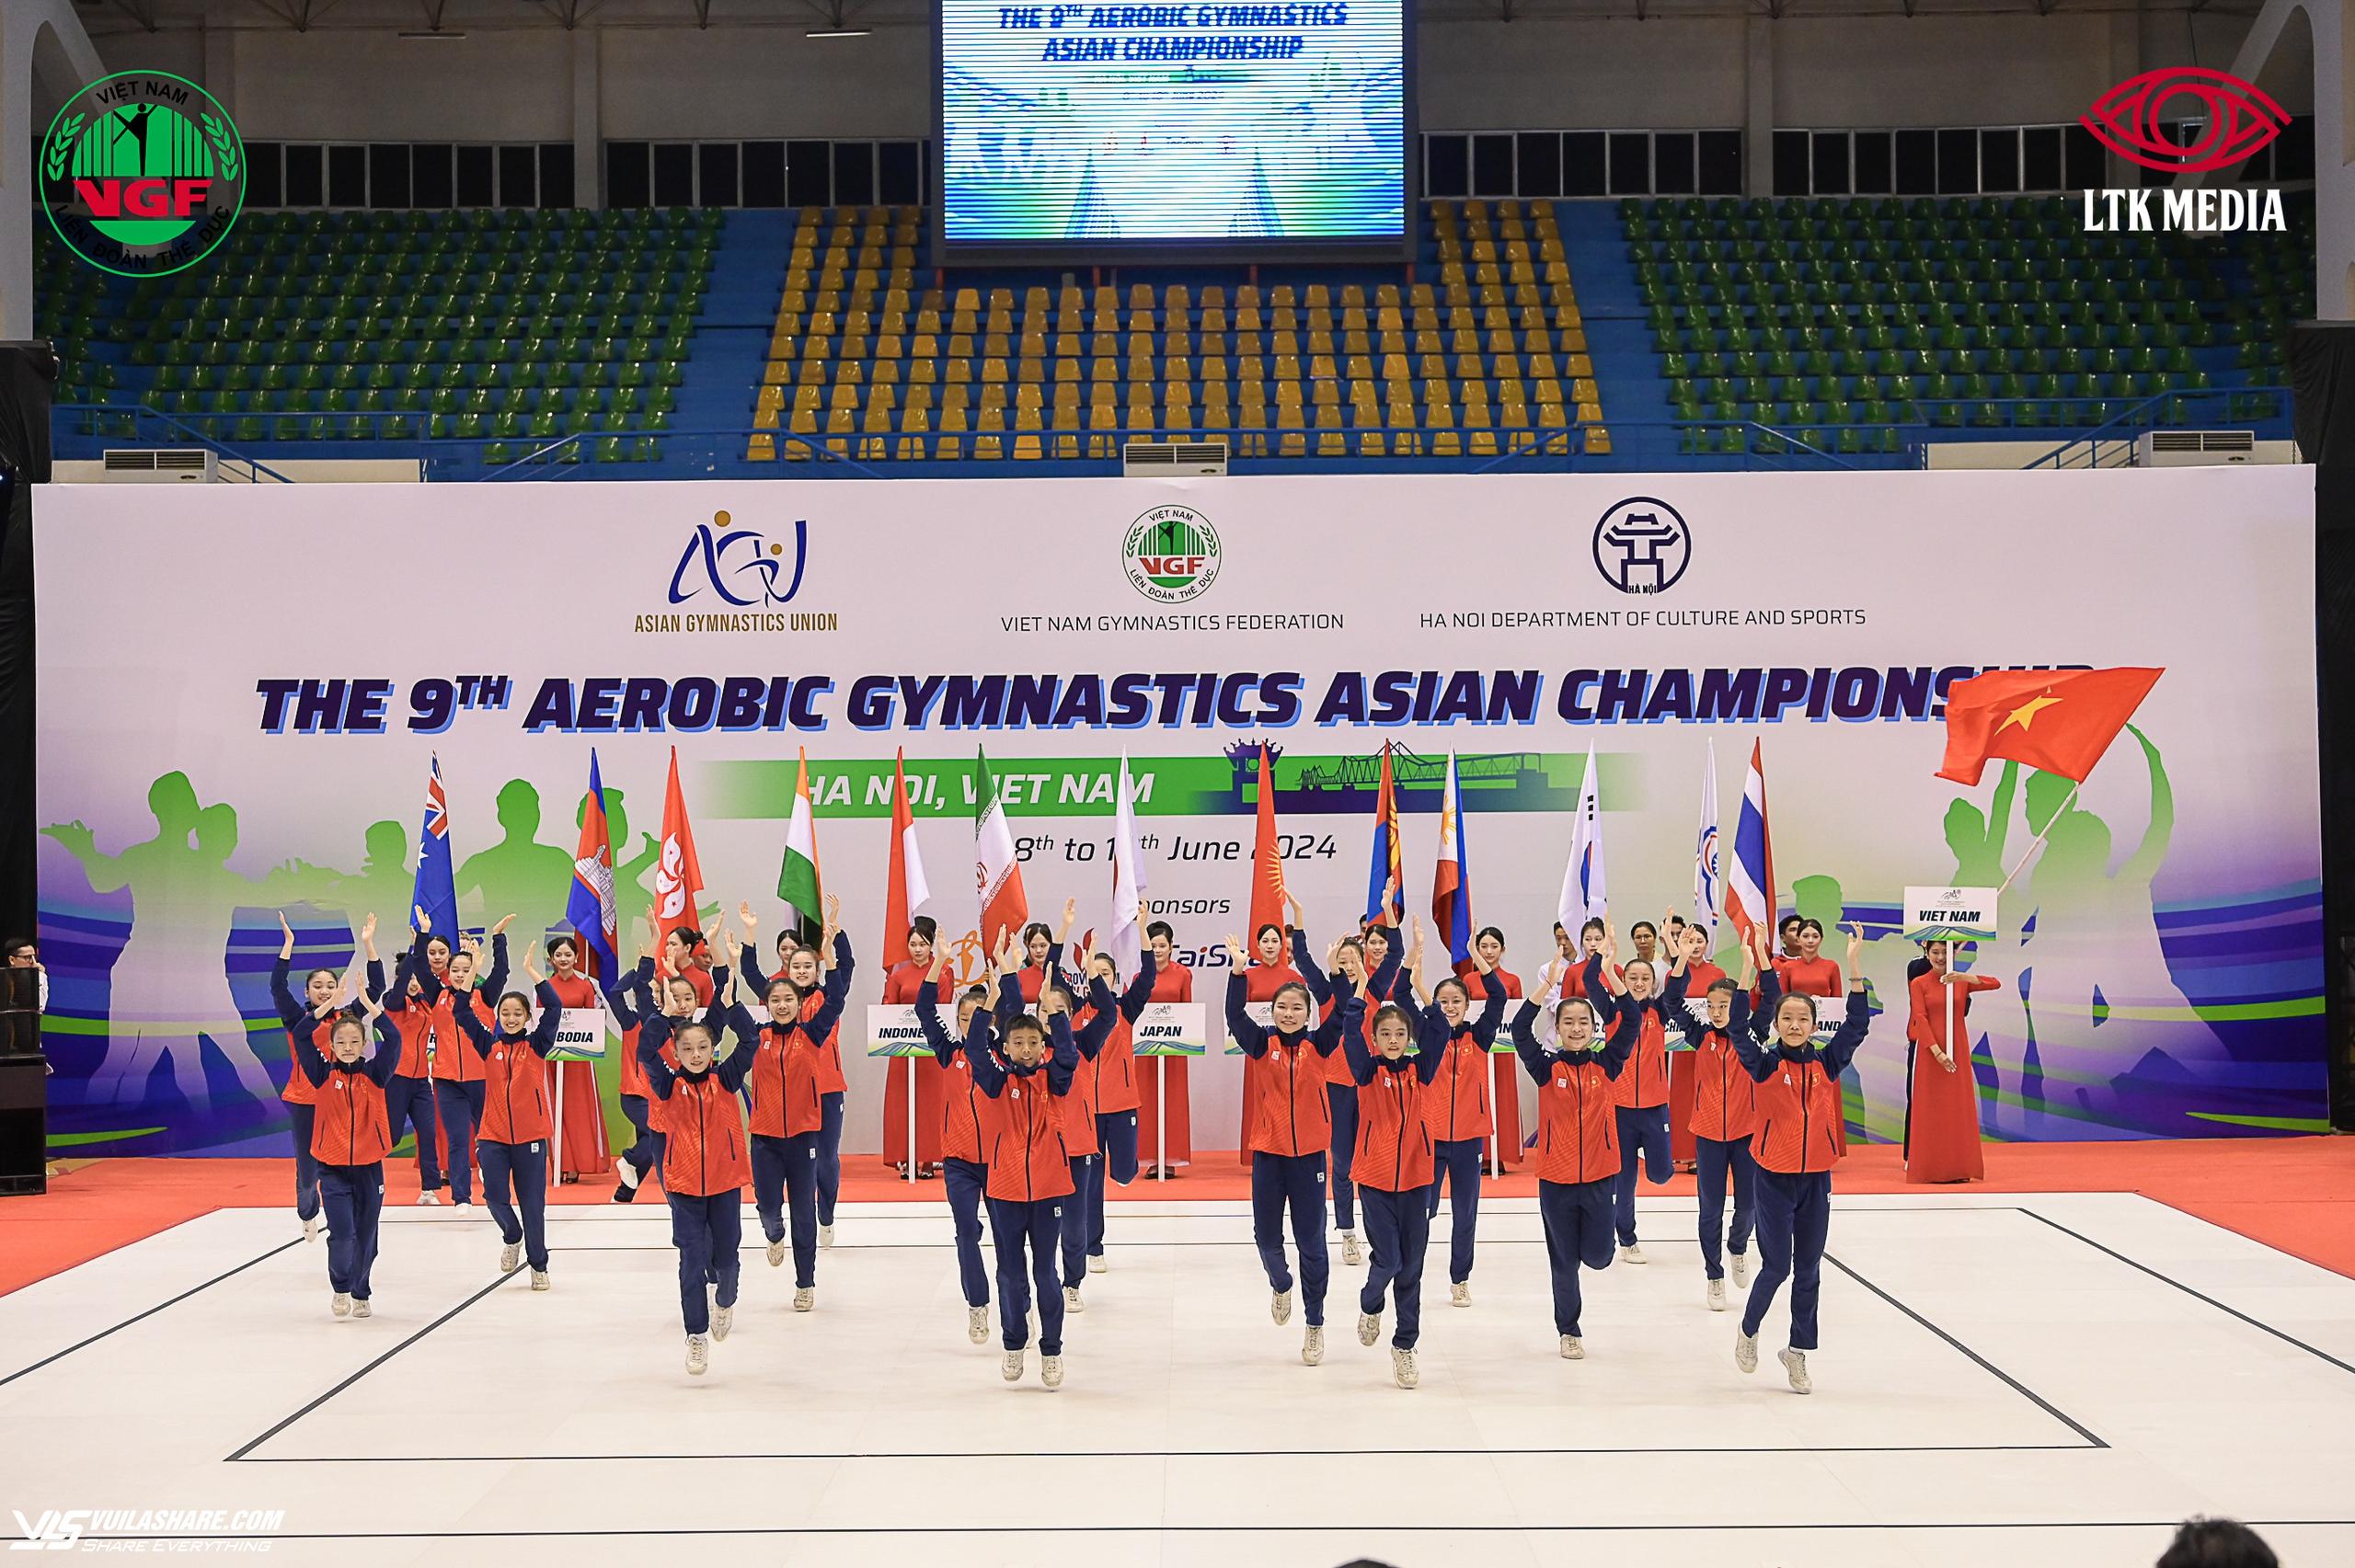 Giải vô địch thể dục aerobic châu Á lần 9 khai mạc, số lượng VĐV đông kỷ lục- Ảnh 2.